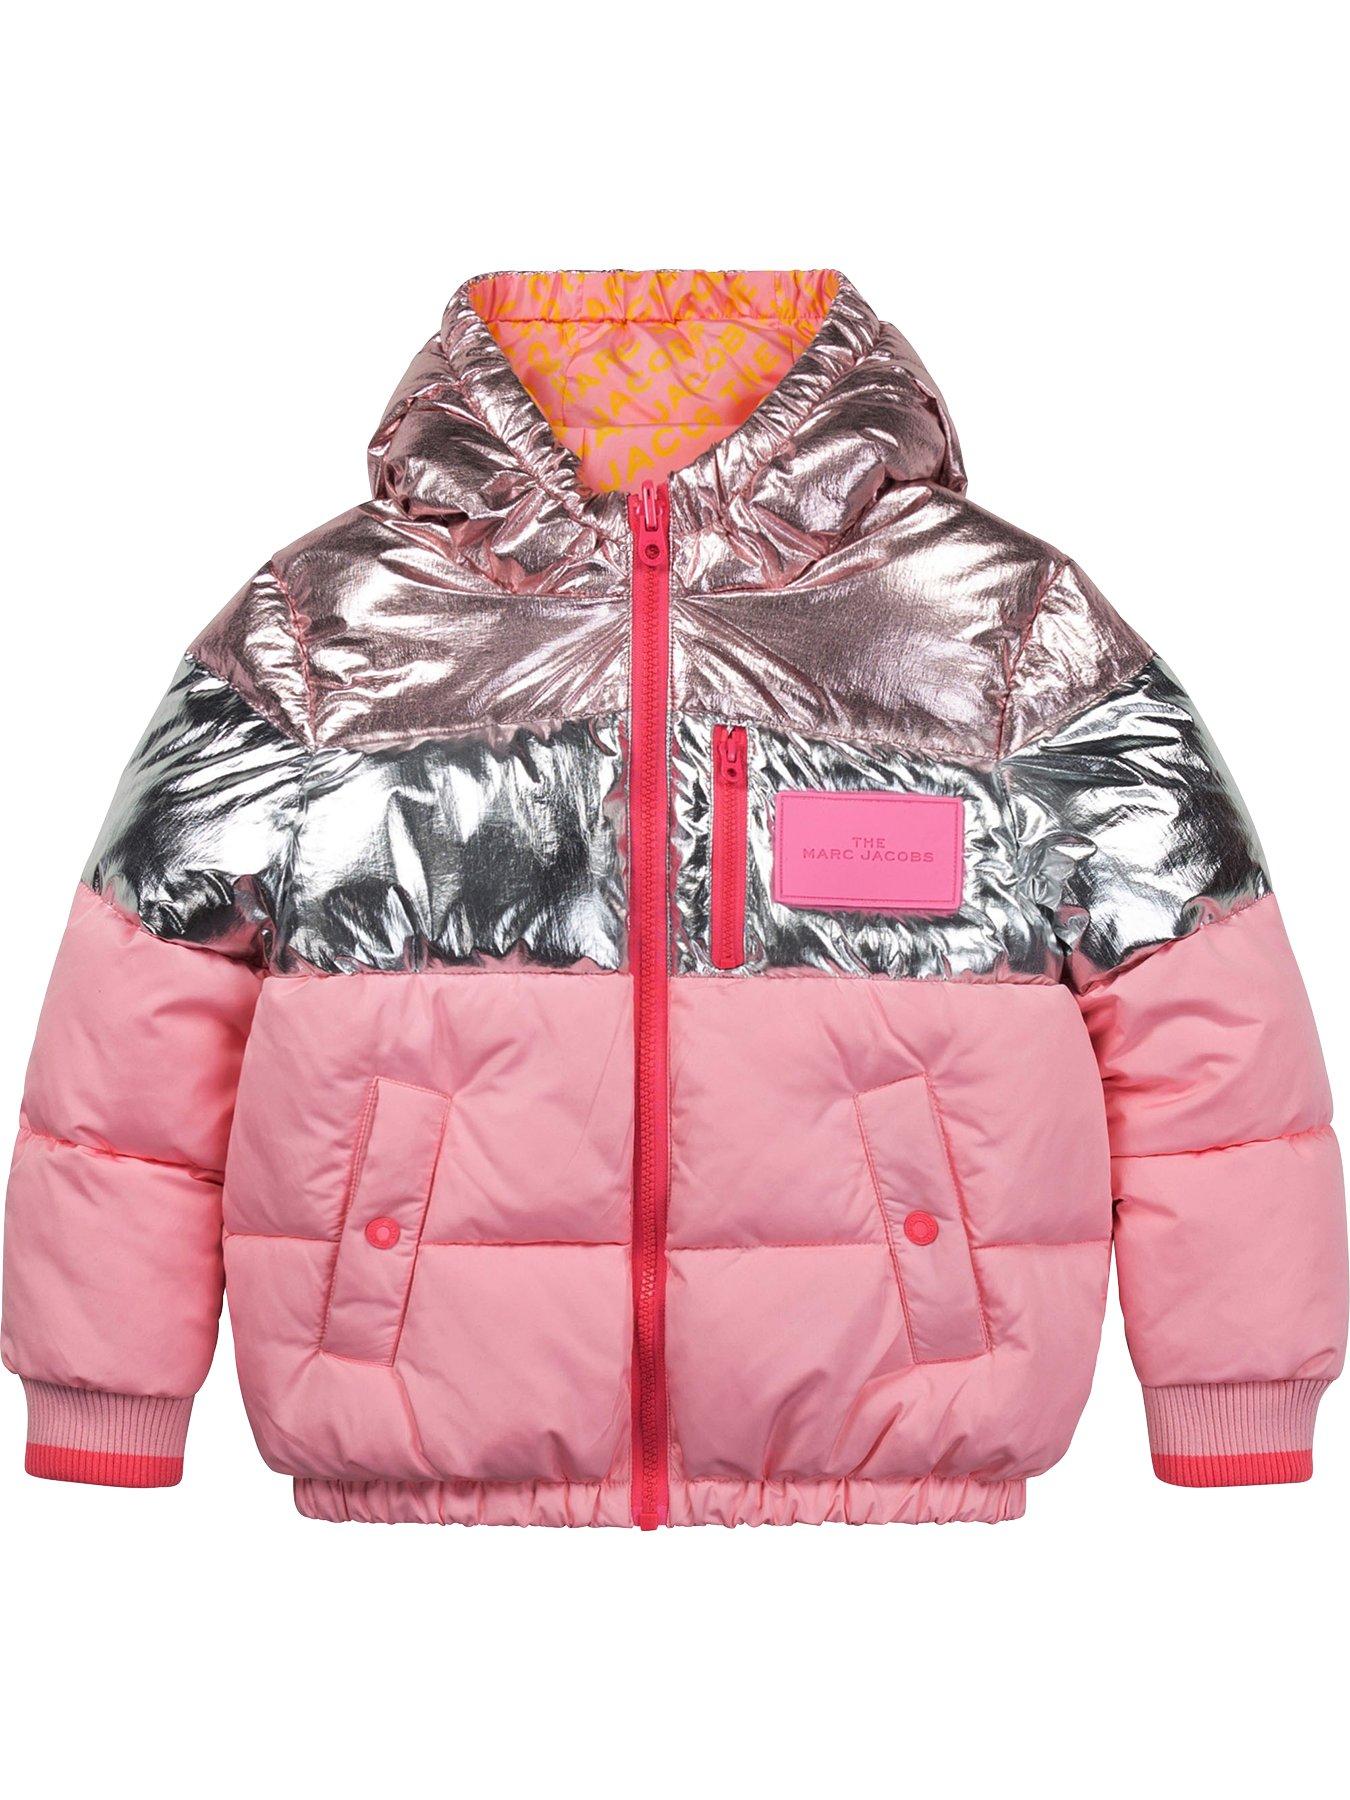 Girls Clothes Unisex Reversible Padded Nylon Jacket - Pink